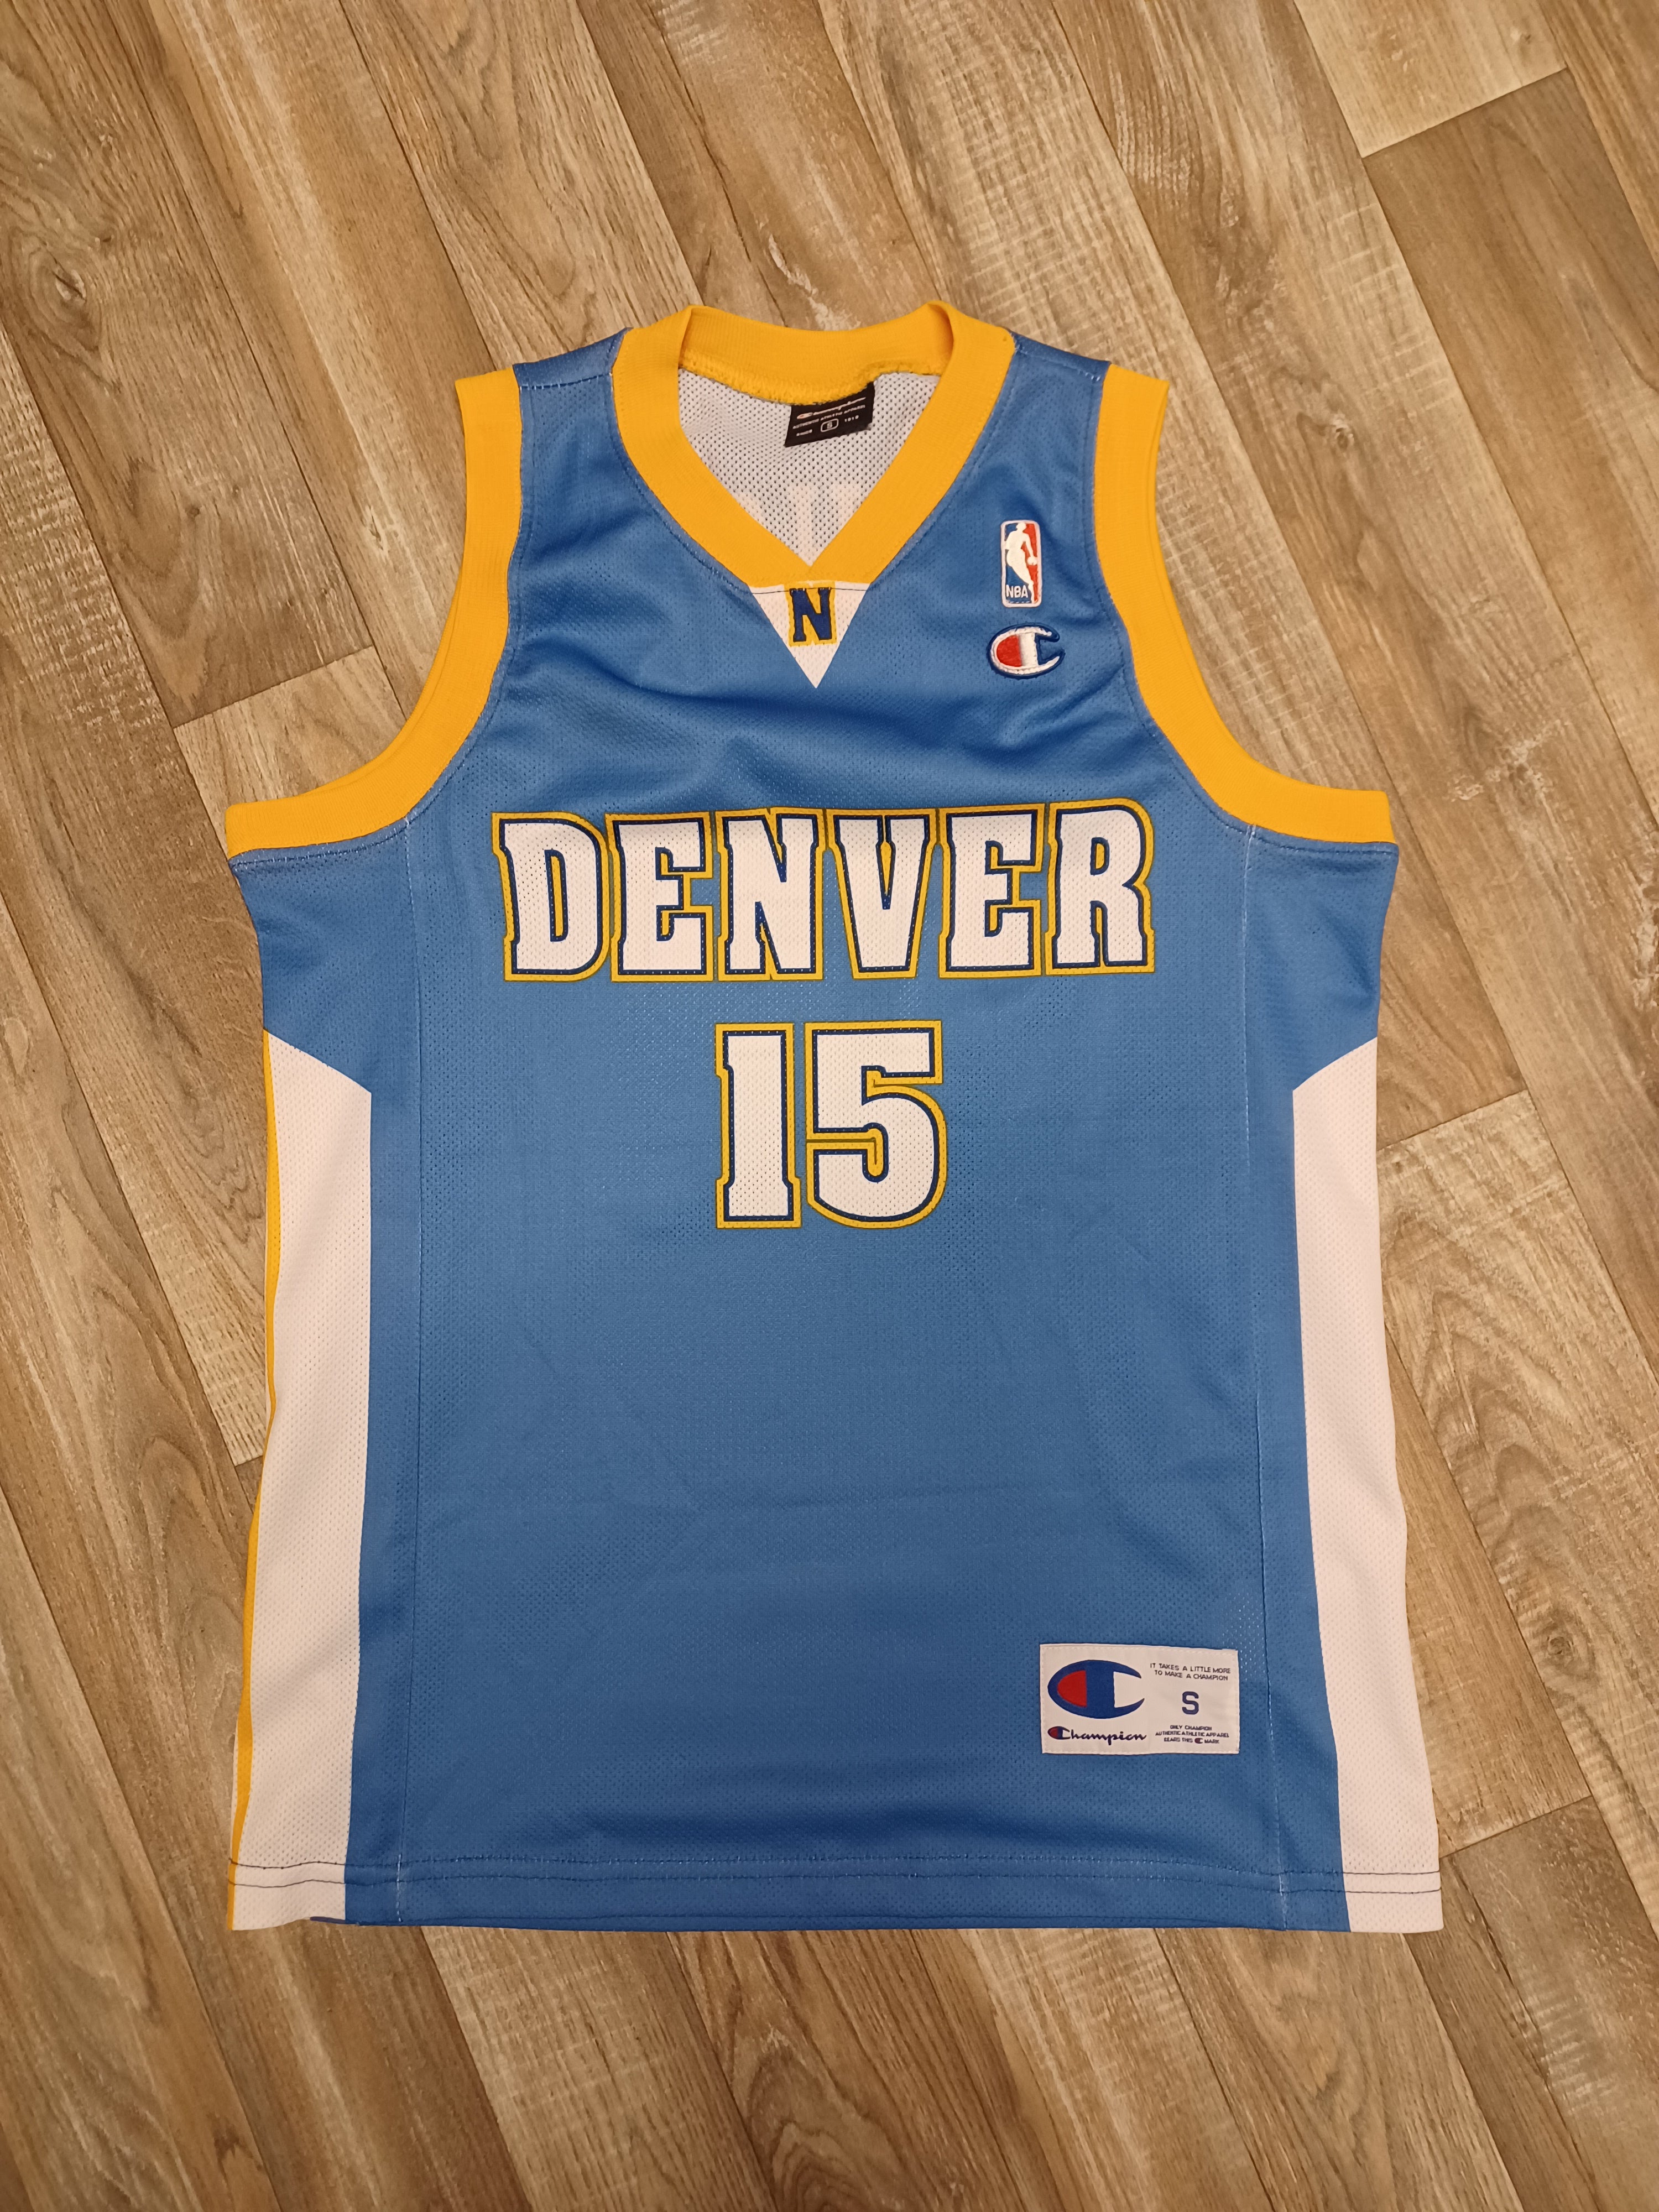 Denver Nuggets, NBA Jerseys